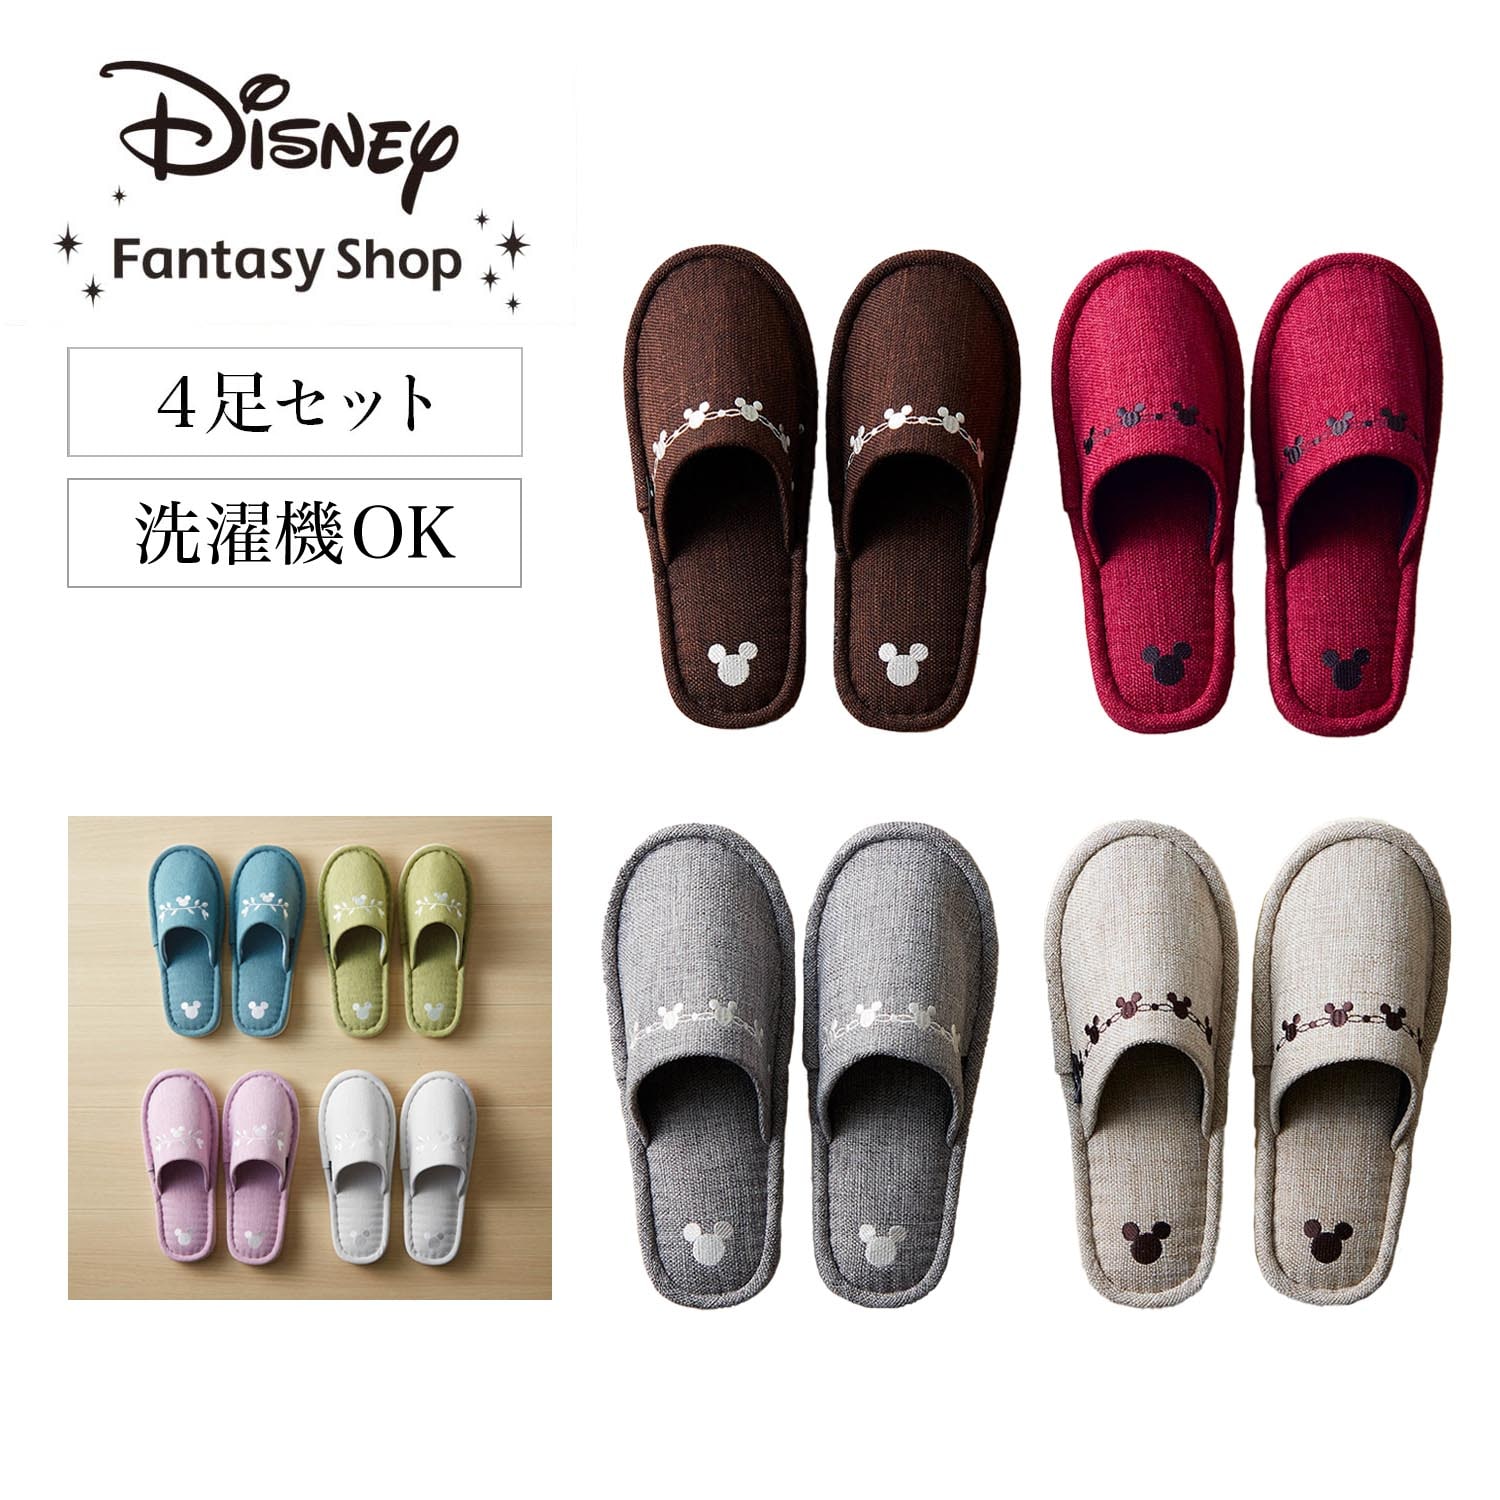 【ディズニー/Disney】洗えるスリッパ4足セット「ミッキーモチーフ」